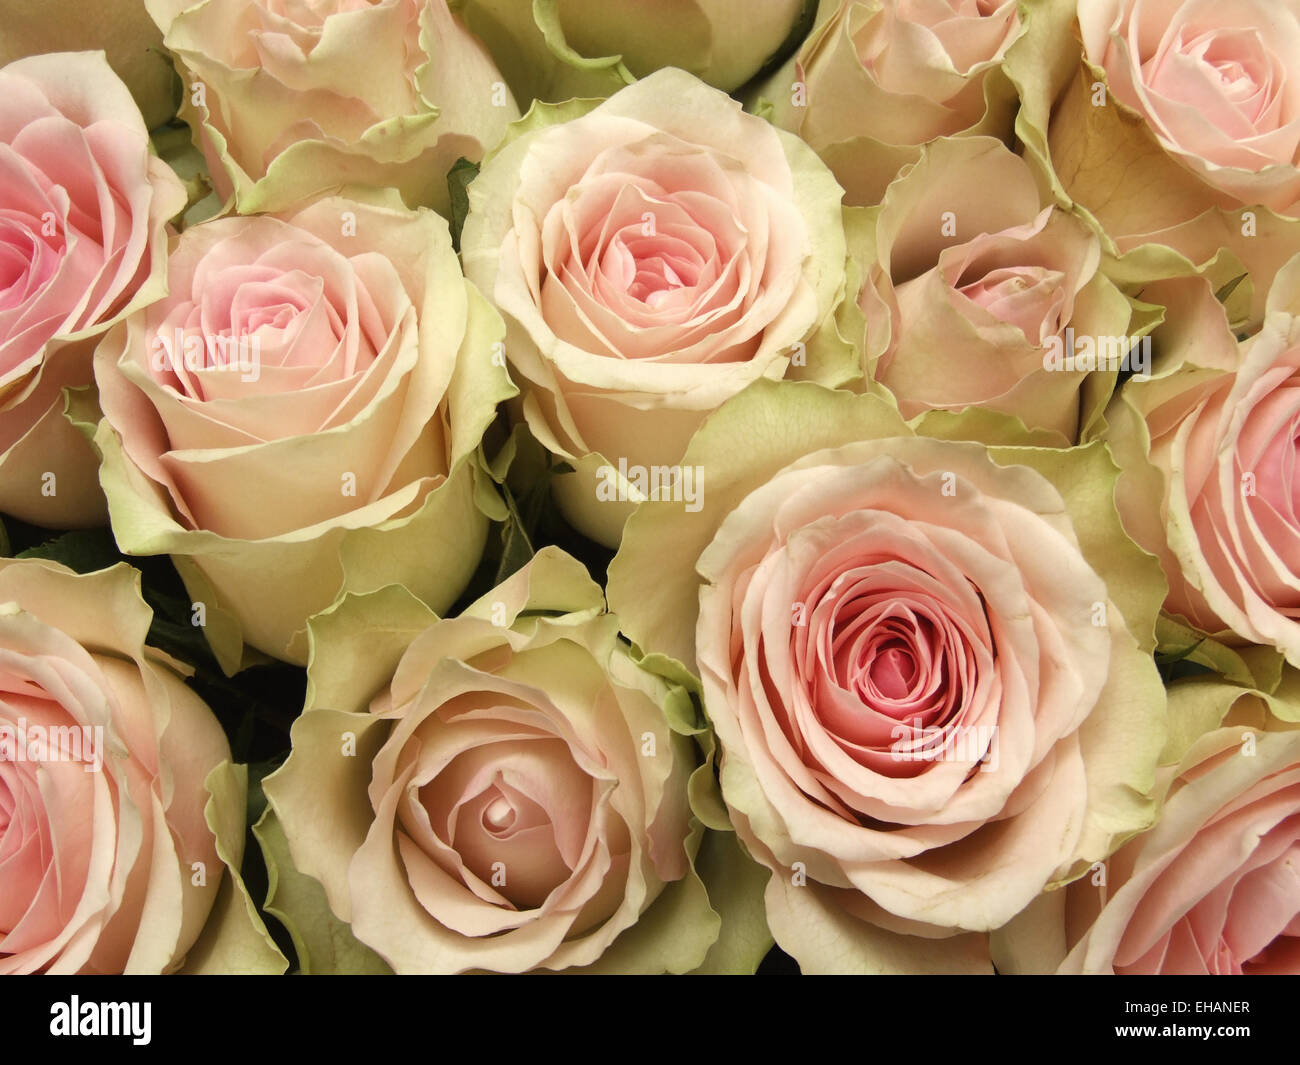 Rosen / roses Stock Photo